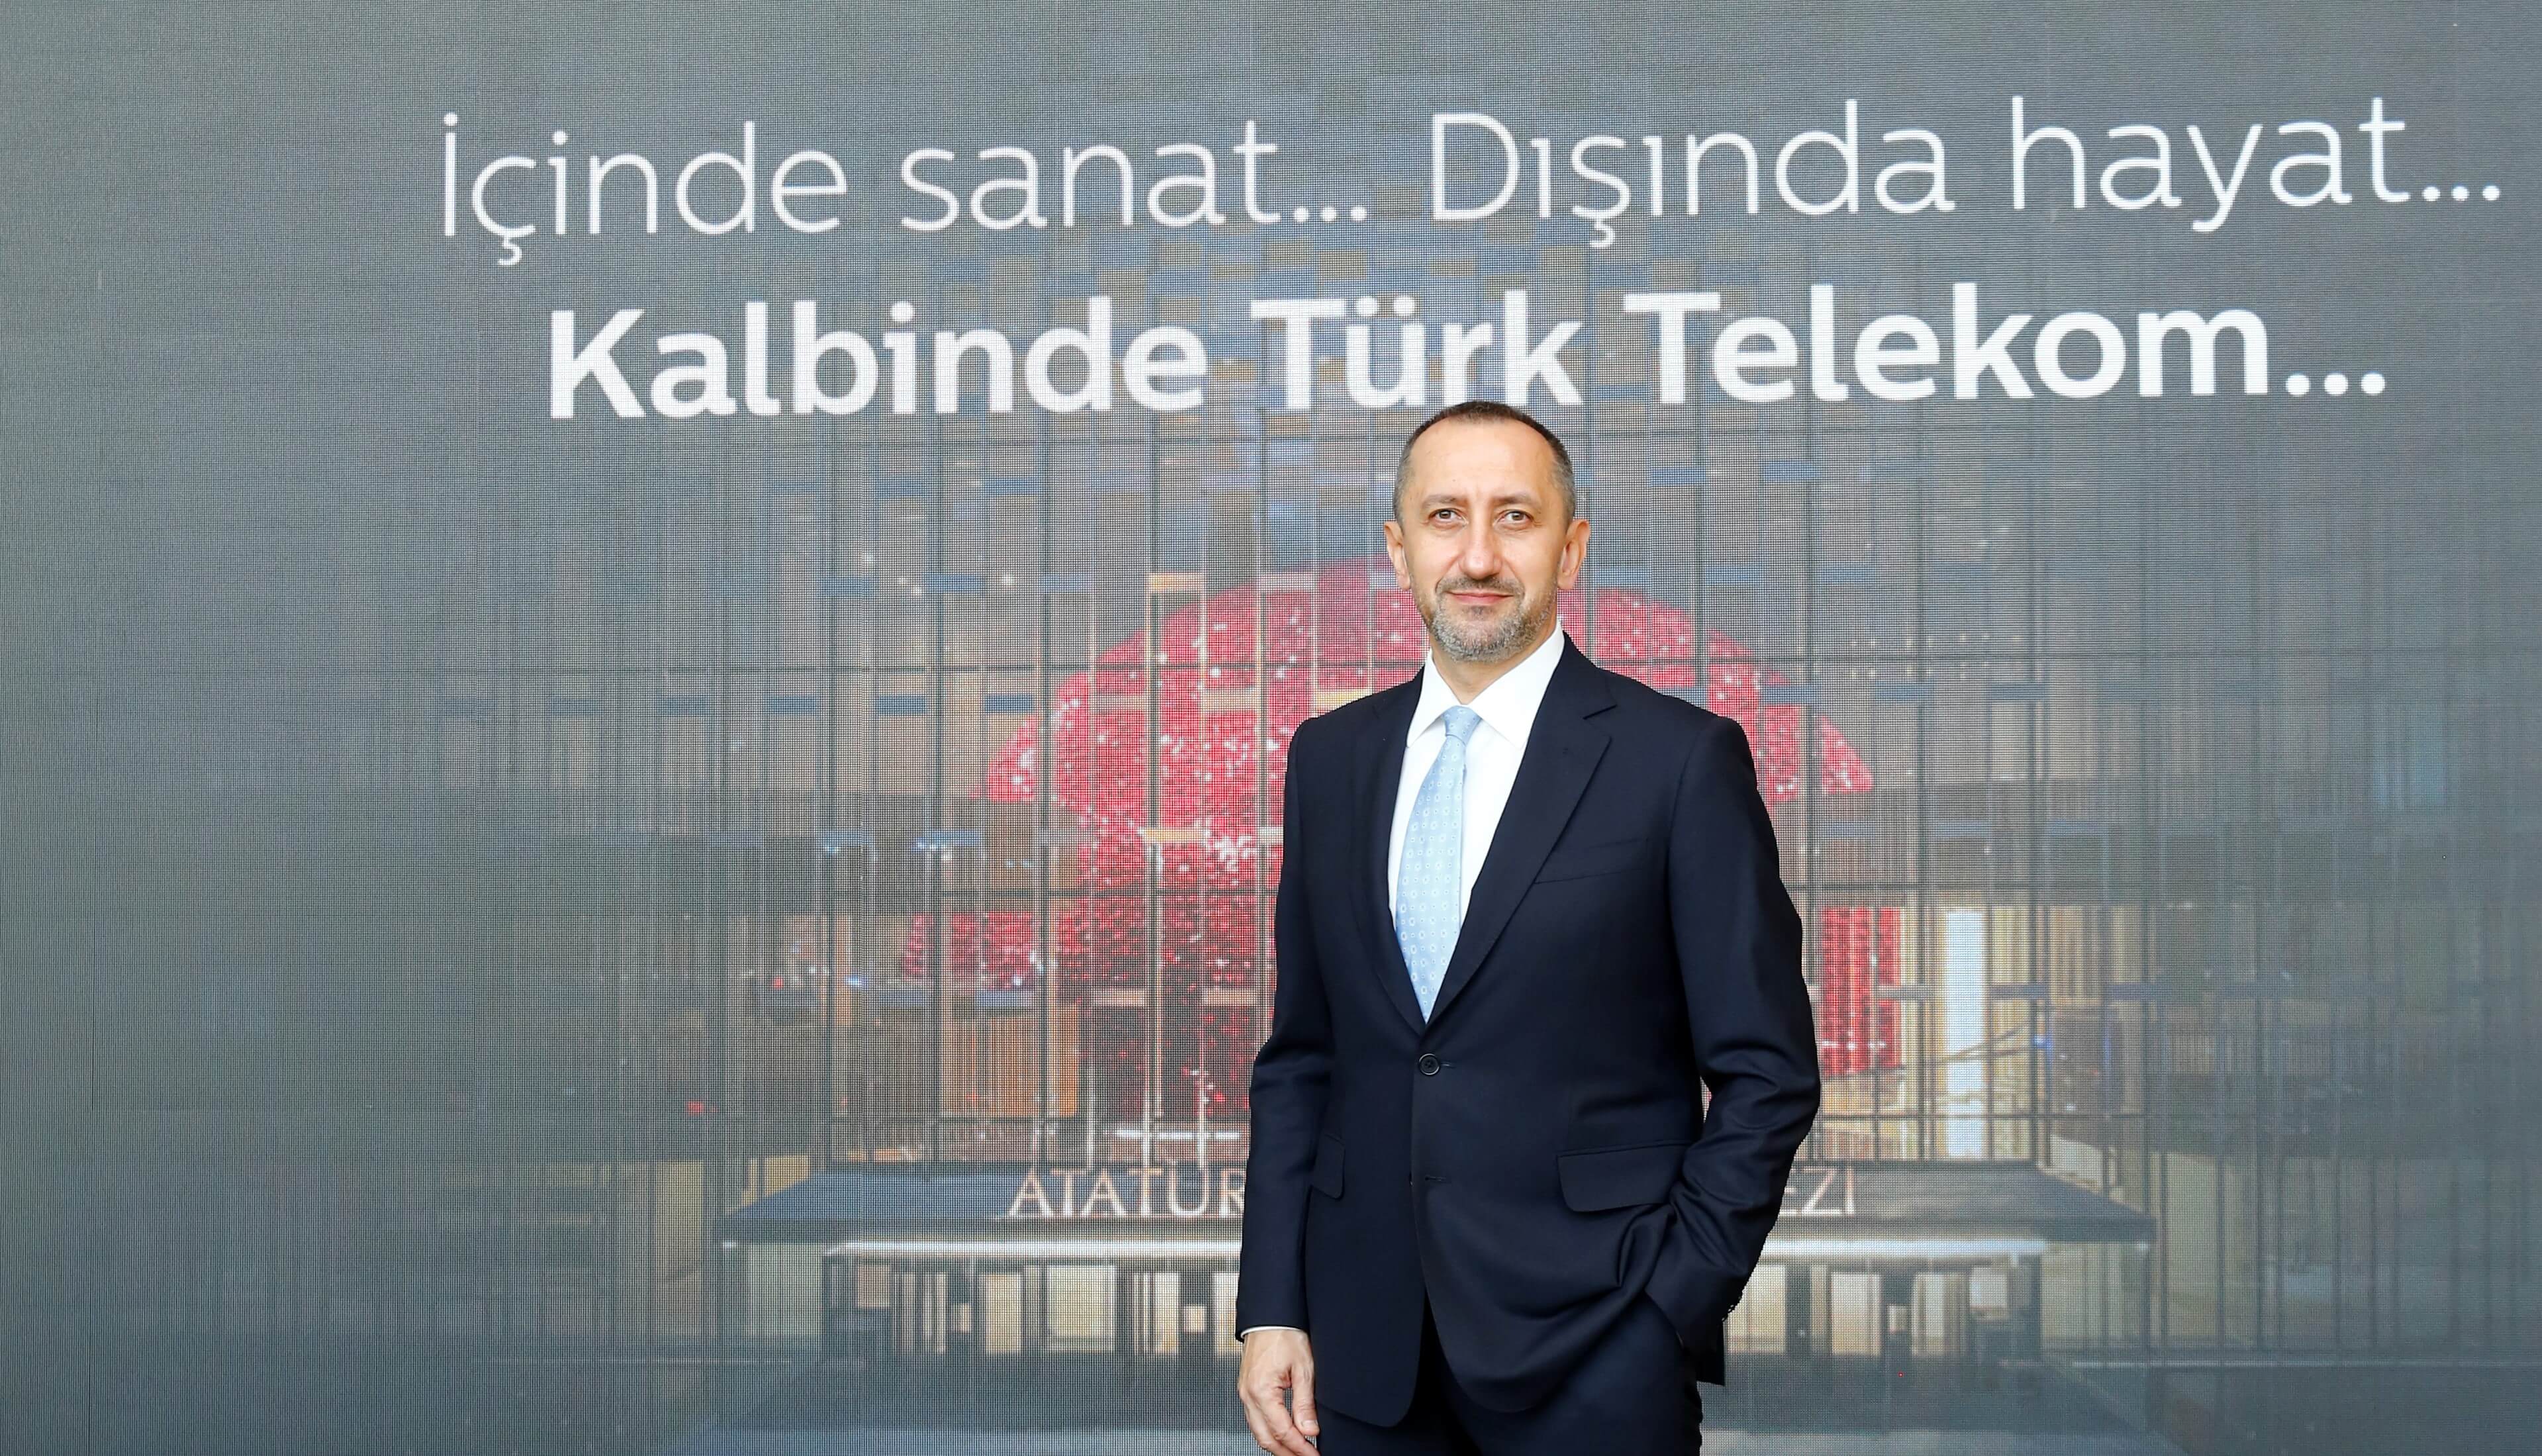 Bir adam Kalbinde Türk Telekom… yazısı önünde duruyor.